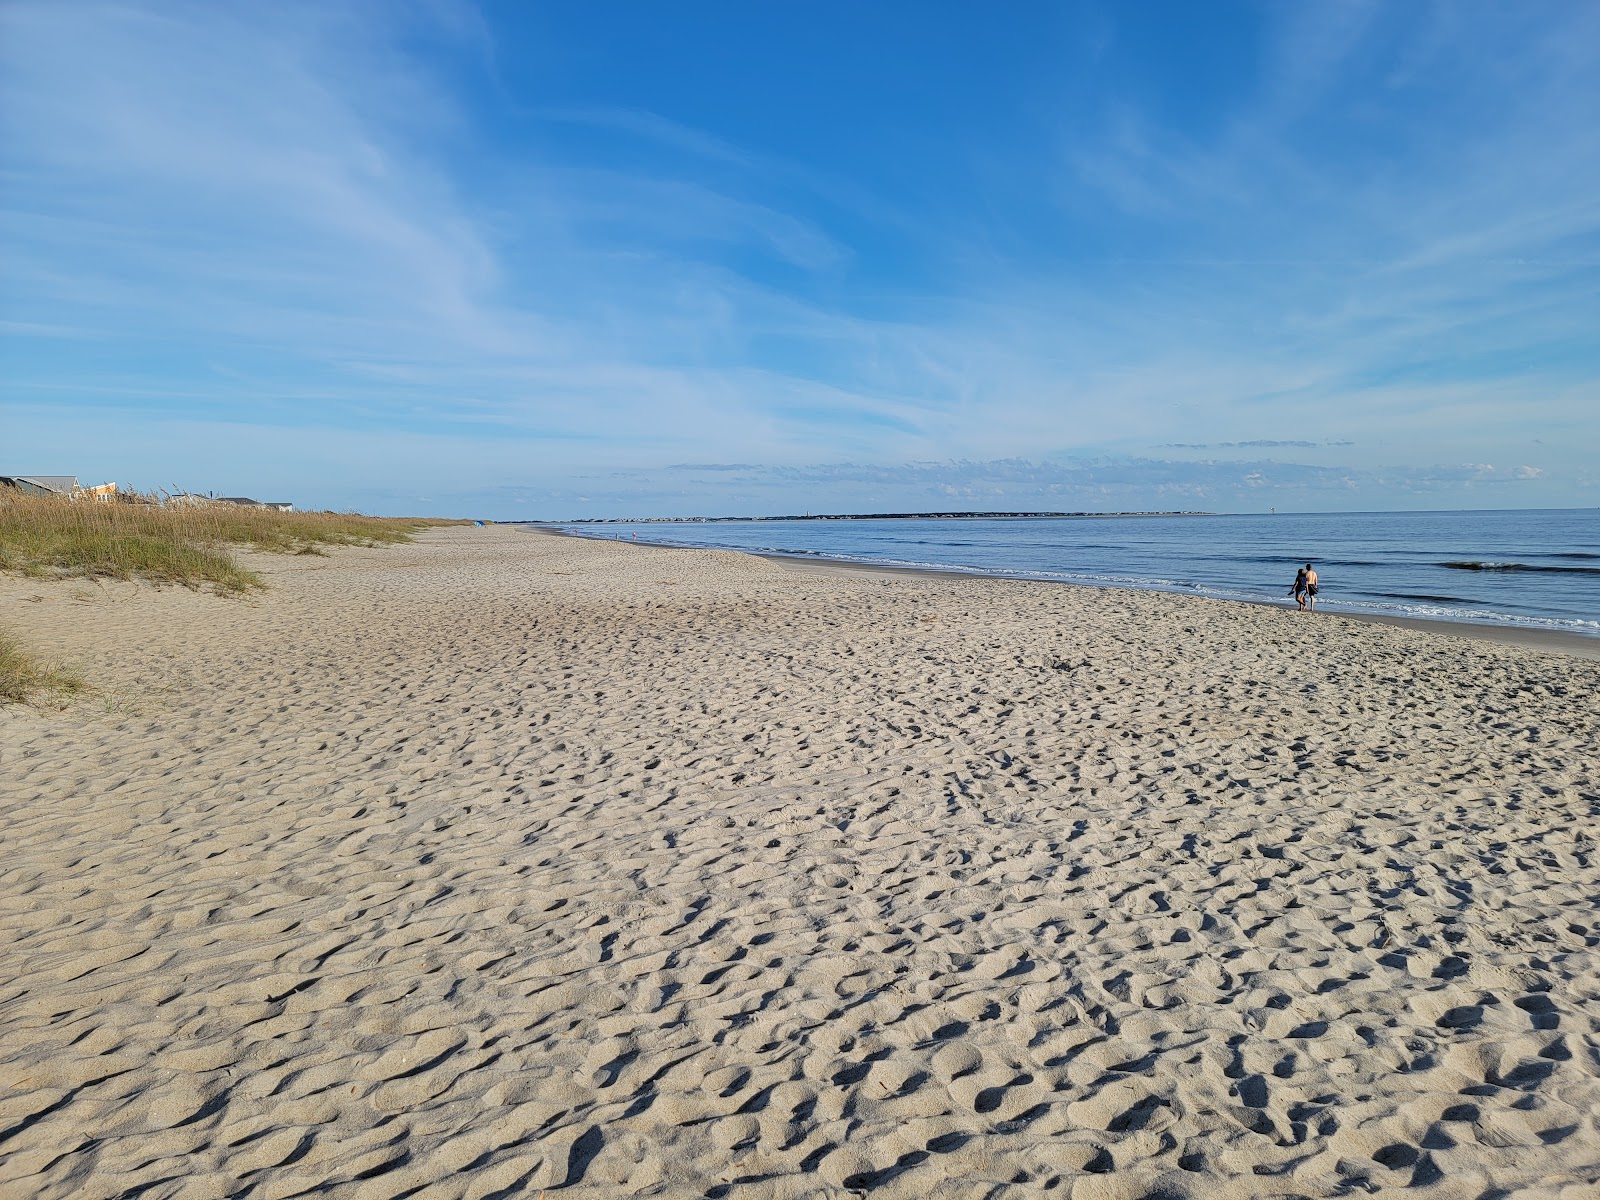 Zdjęcie Caswell beach z powierzchnią jasny piasek